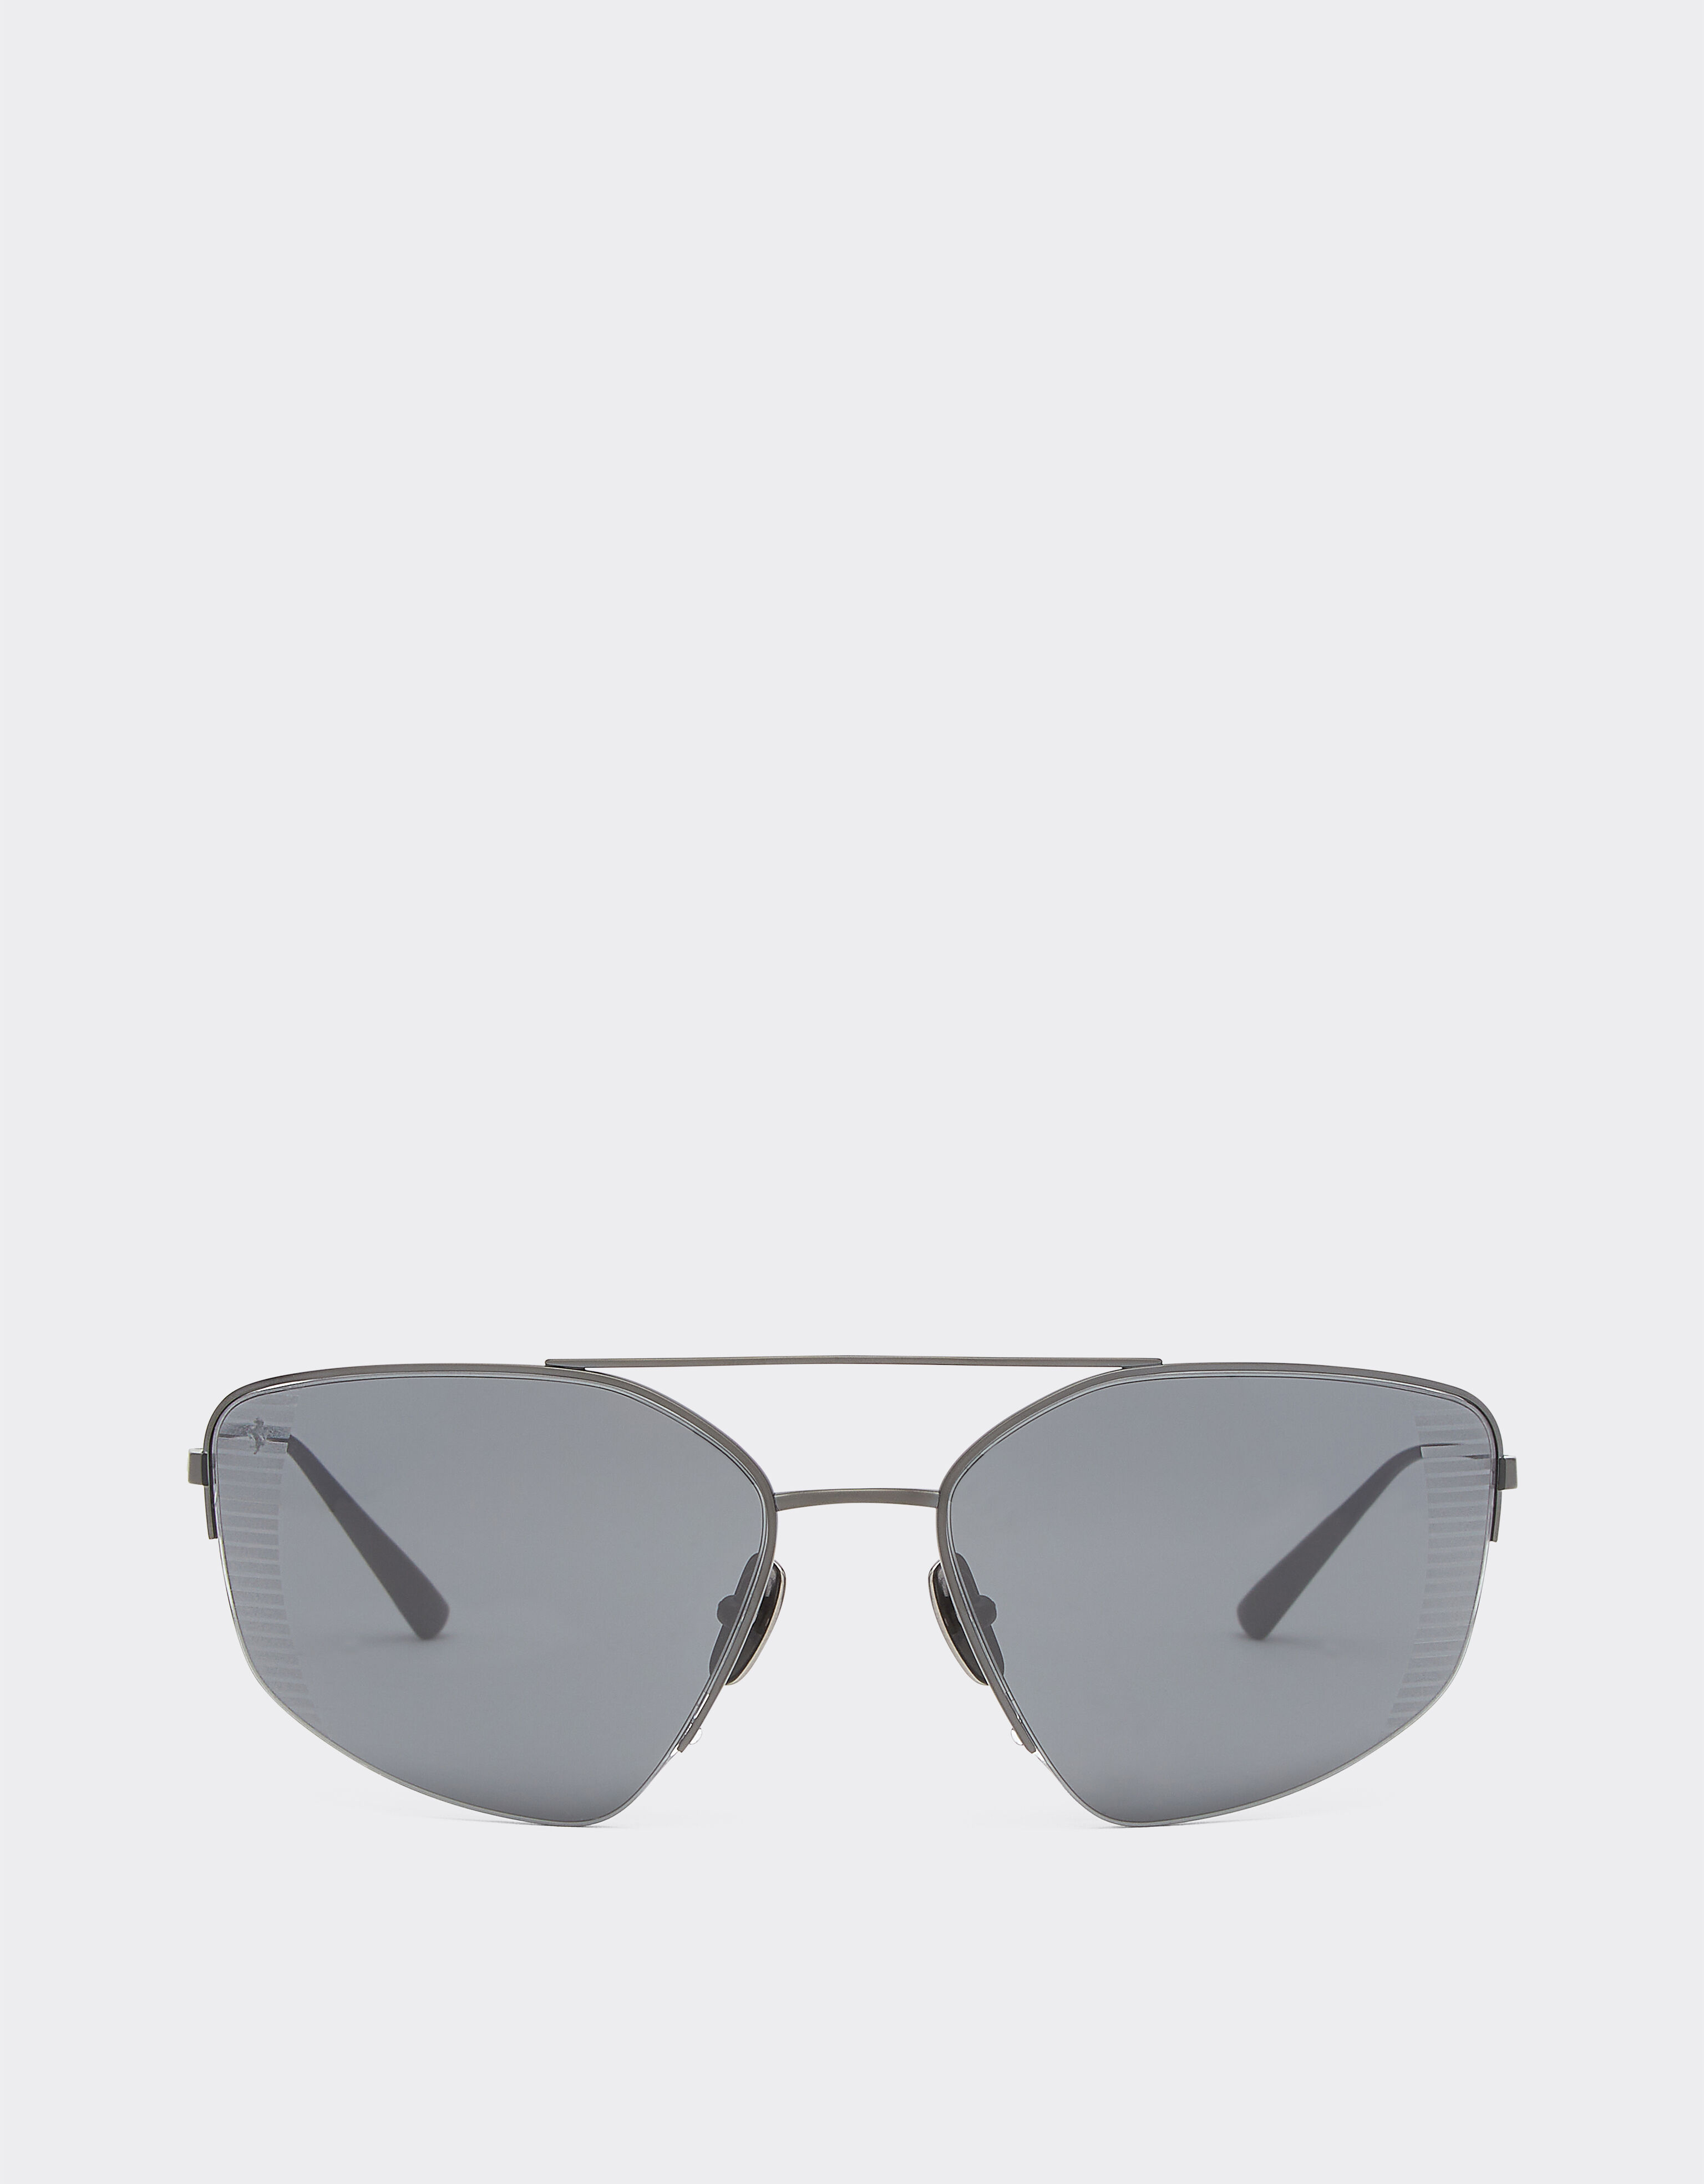 ${brand} Ferrari sunglasses in black titanium with grey polarised lenses ${colorDescription} ${masterID}